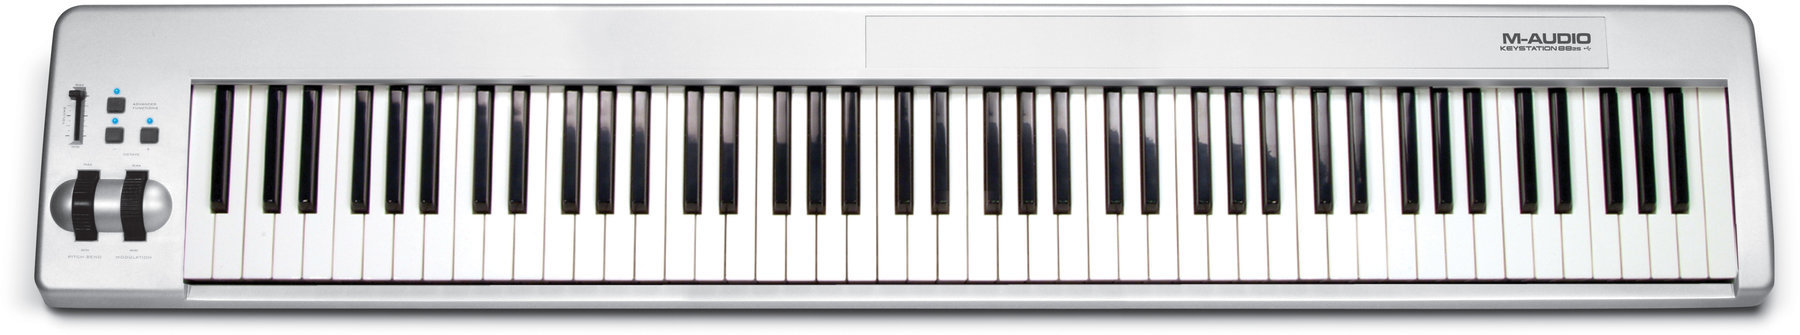 Master Keyboard M-Audio Keystation 88 es